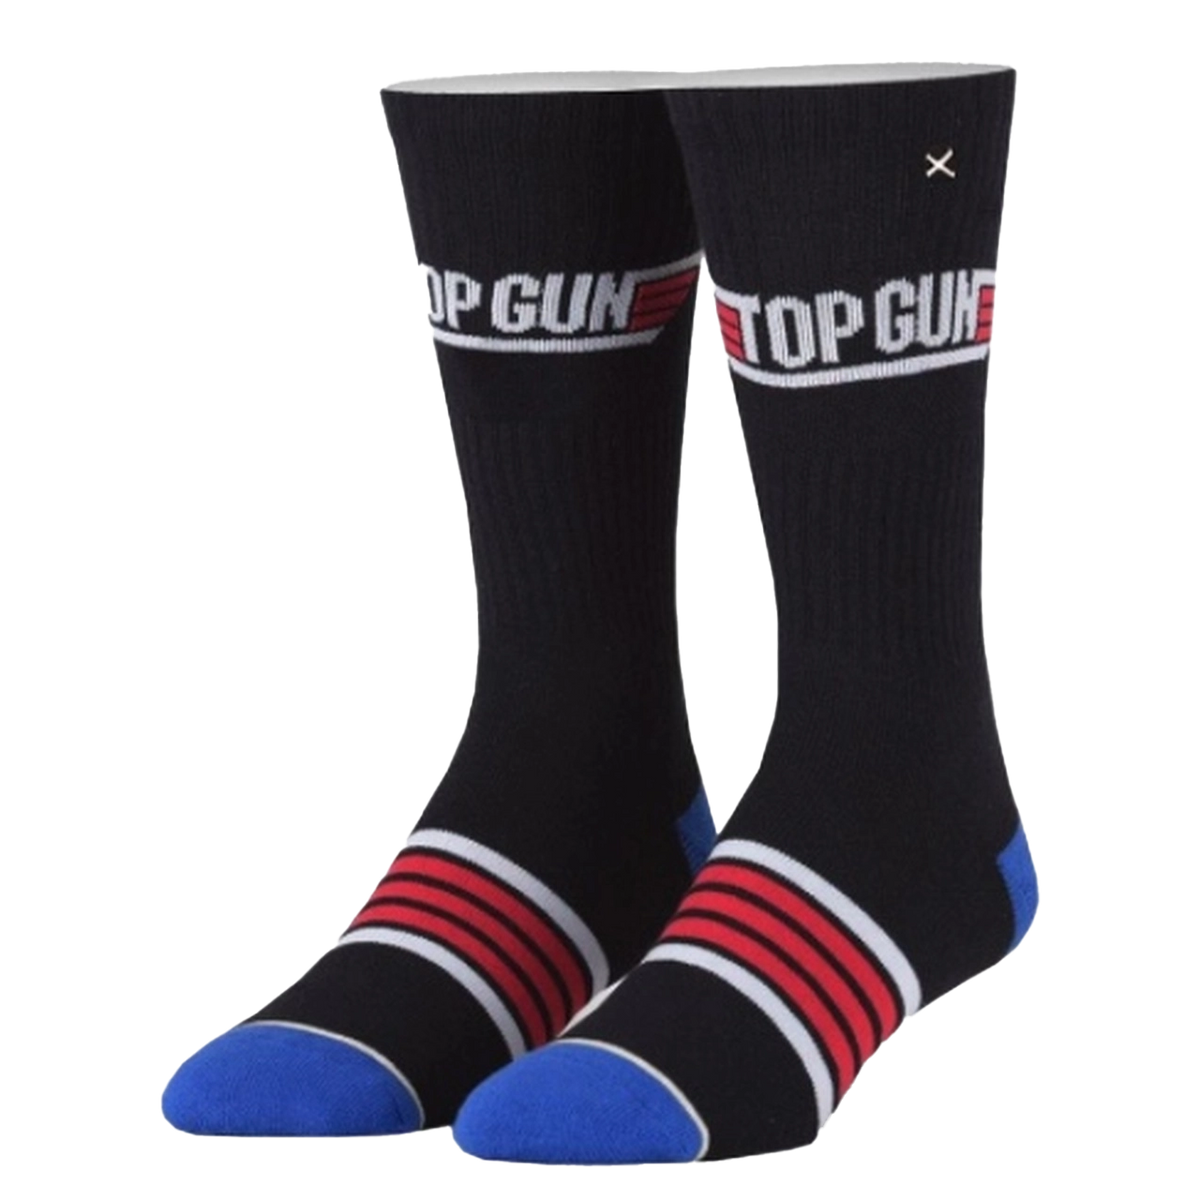 Top Gun Knit Socks